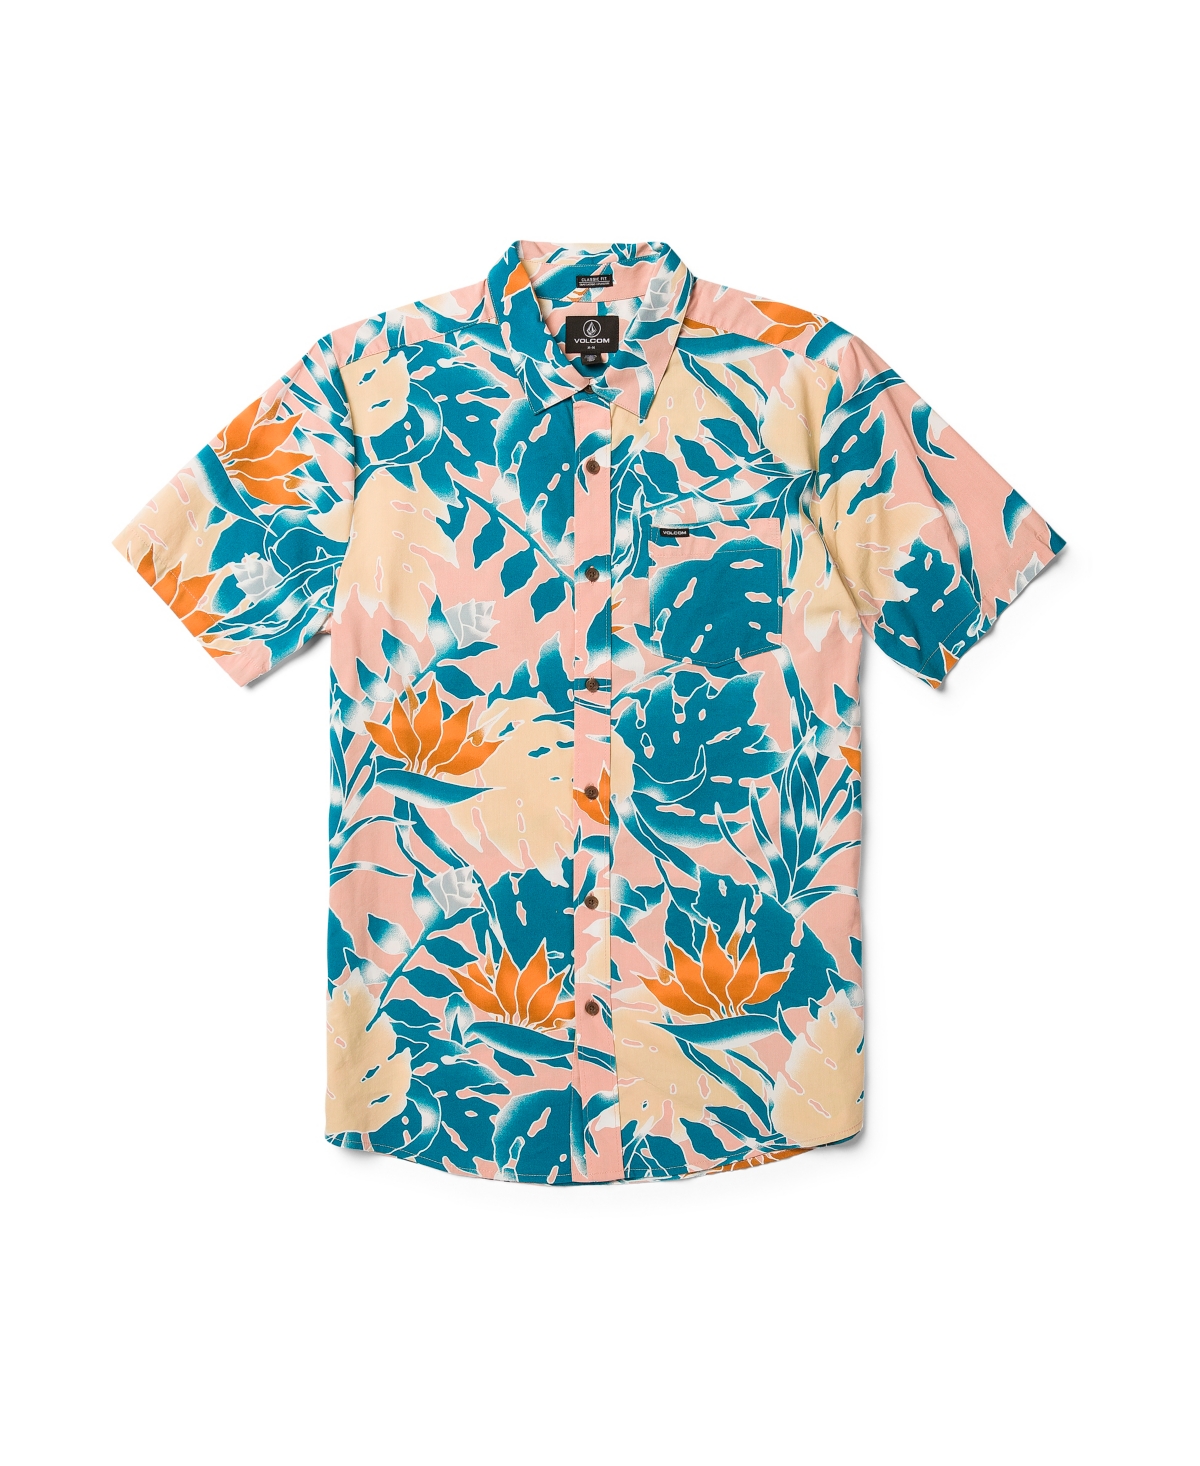 Men's Leaf Pit Floral Short Sleeve Shirt - Salmon